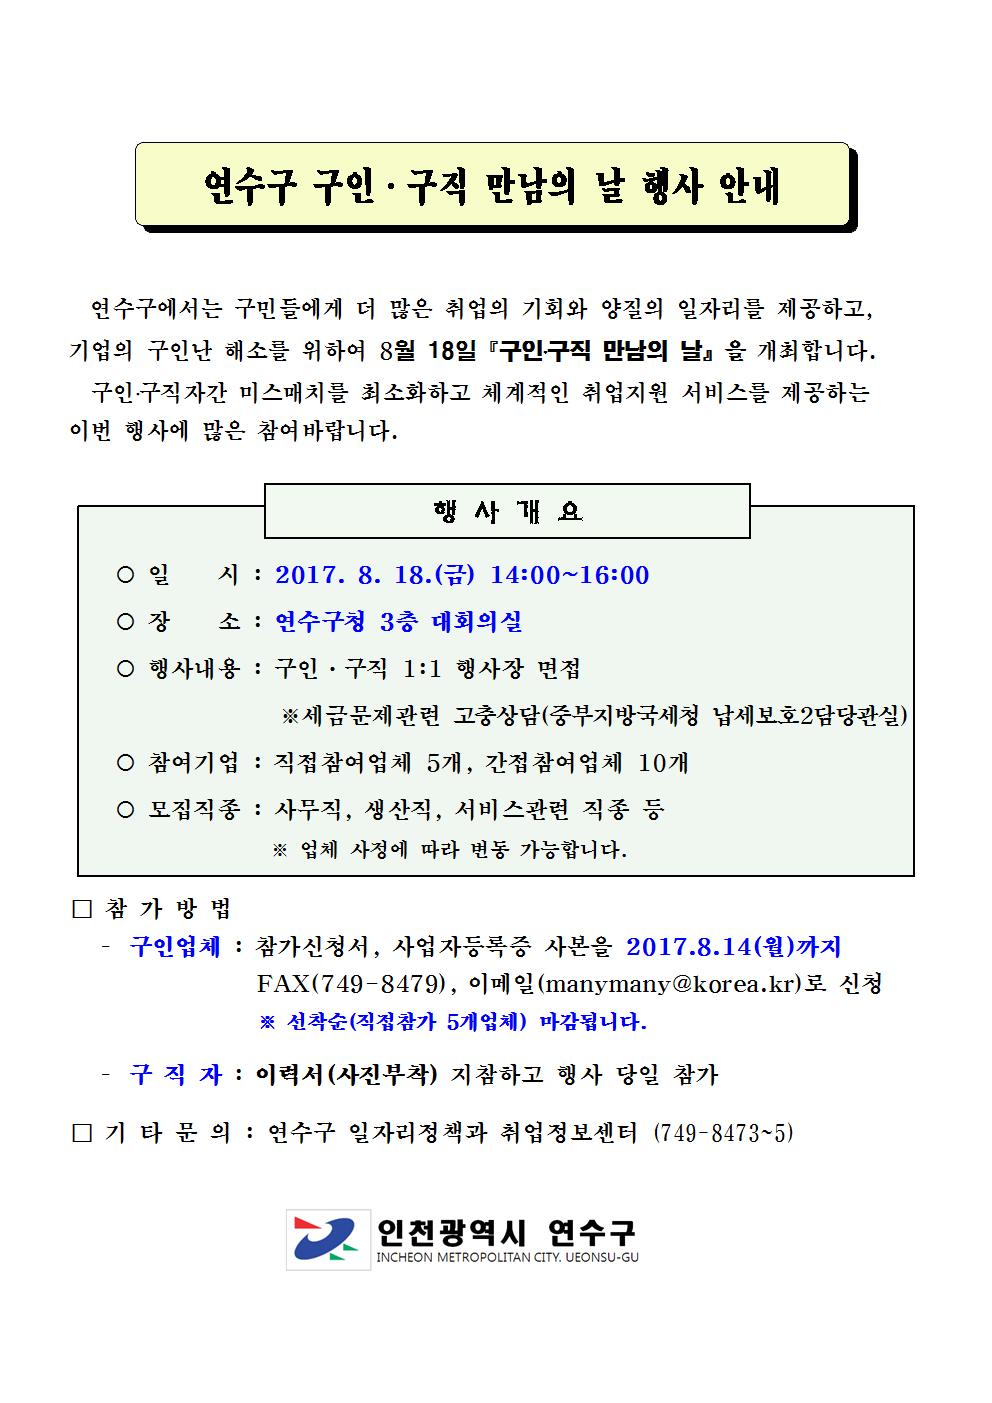 제6회 연수구 구인·구직 만남의날 행사 개최 안내!!의 1번째 이미지